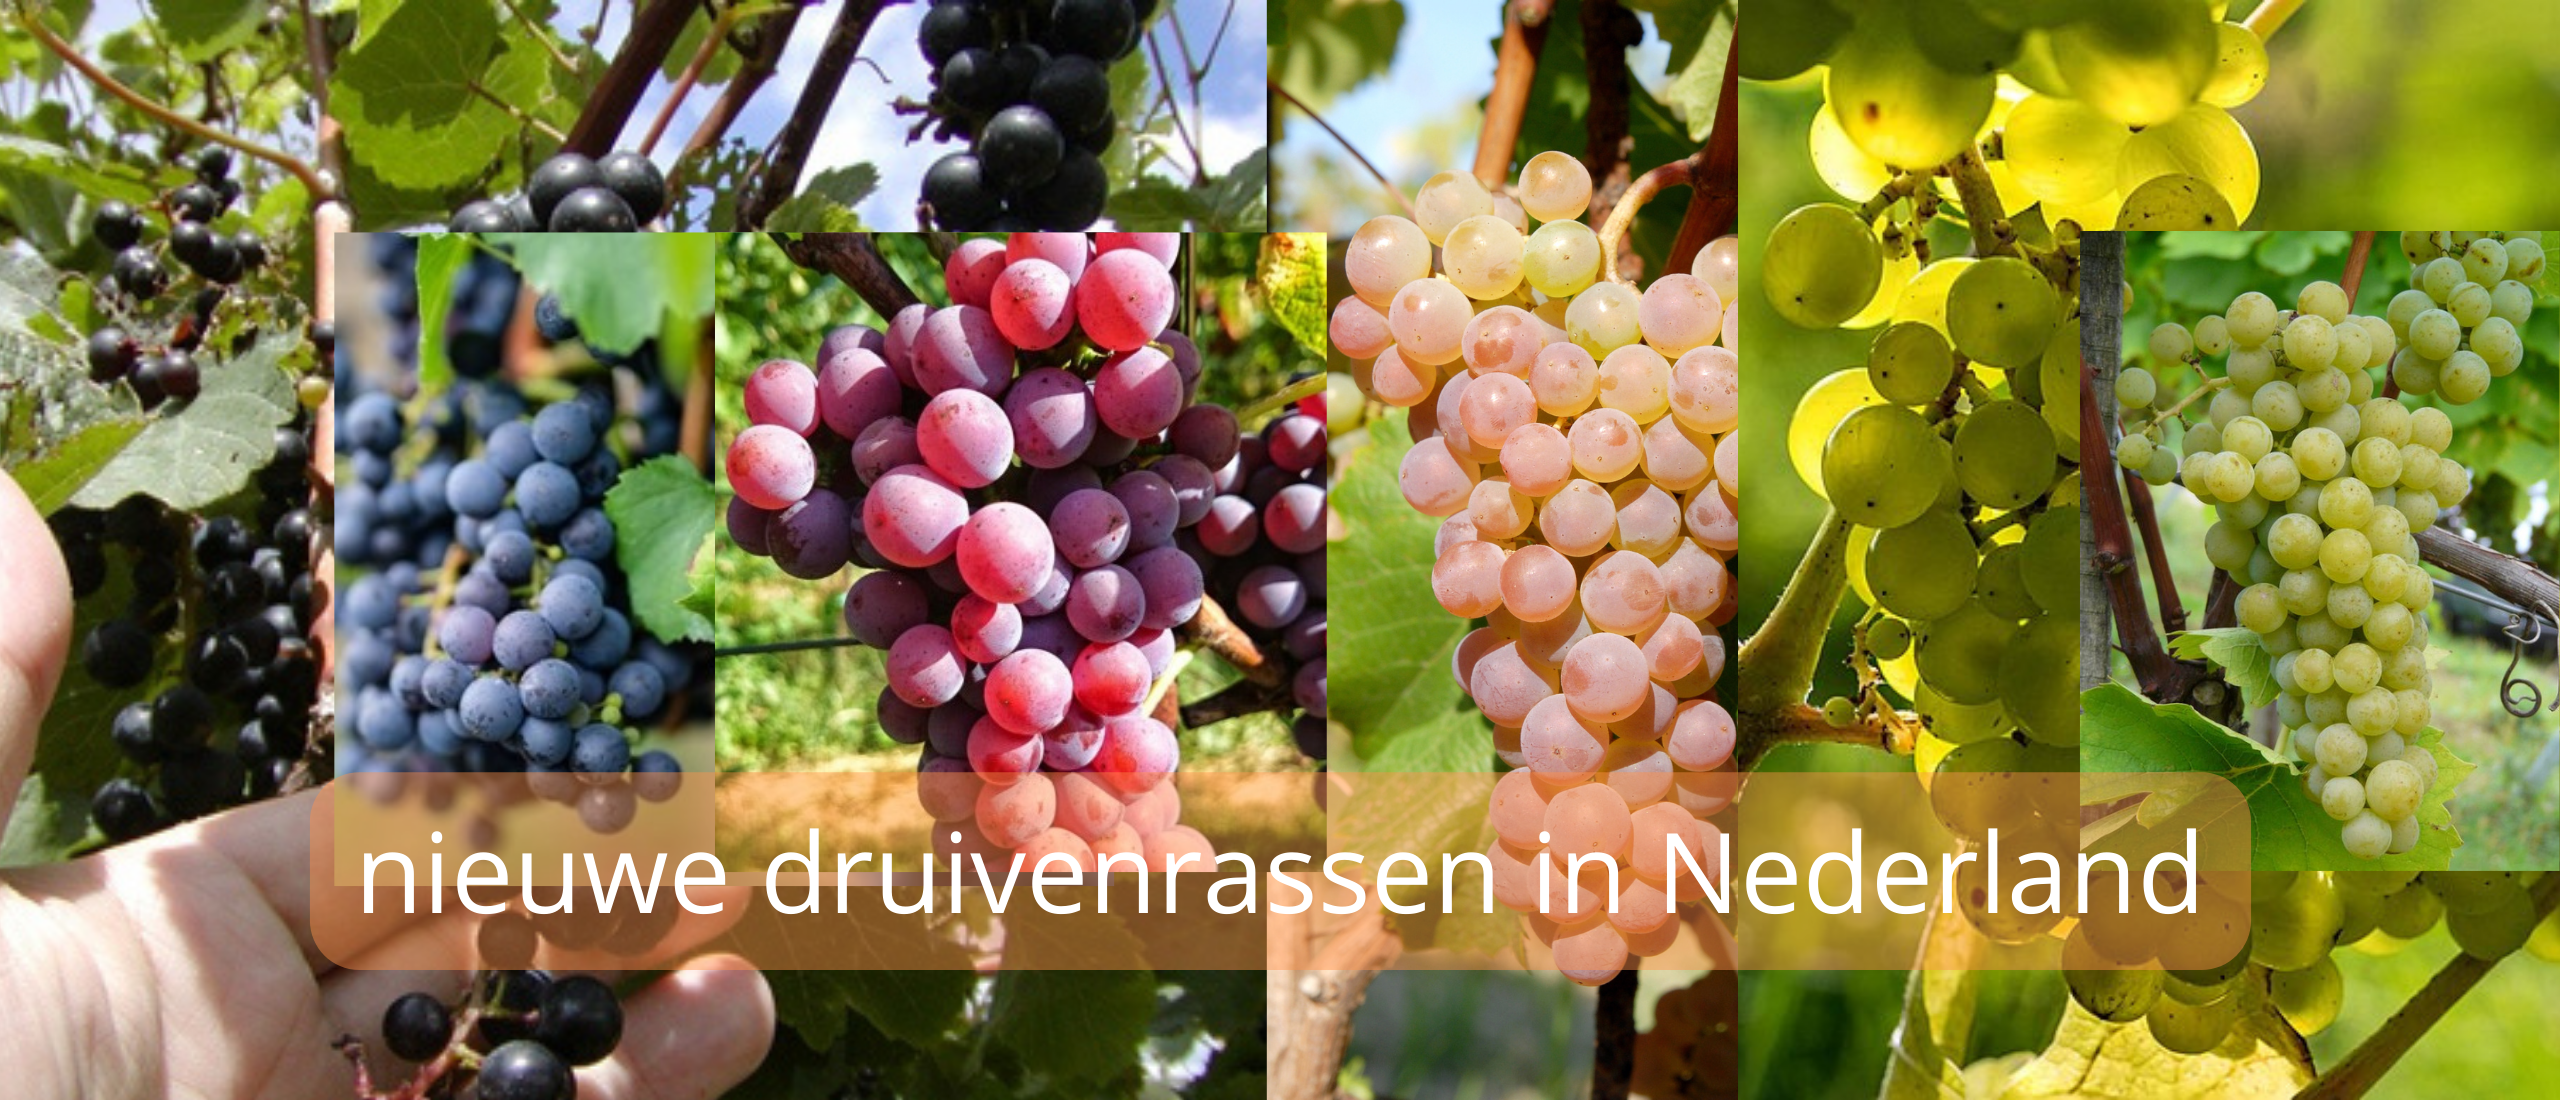 Populairste nieuwe druivenrassen in de Nederlandse wijnbouw